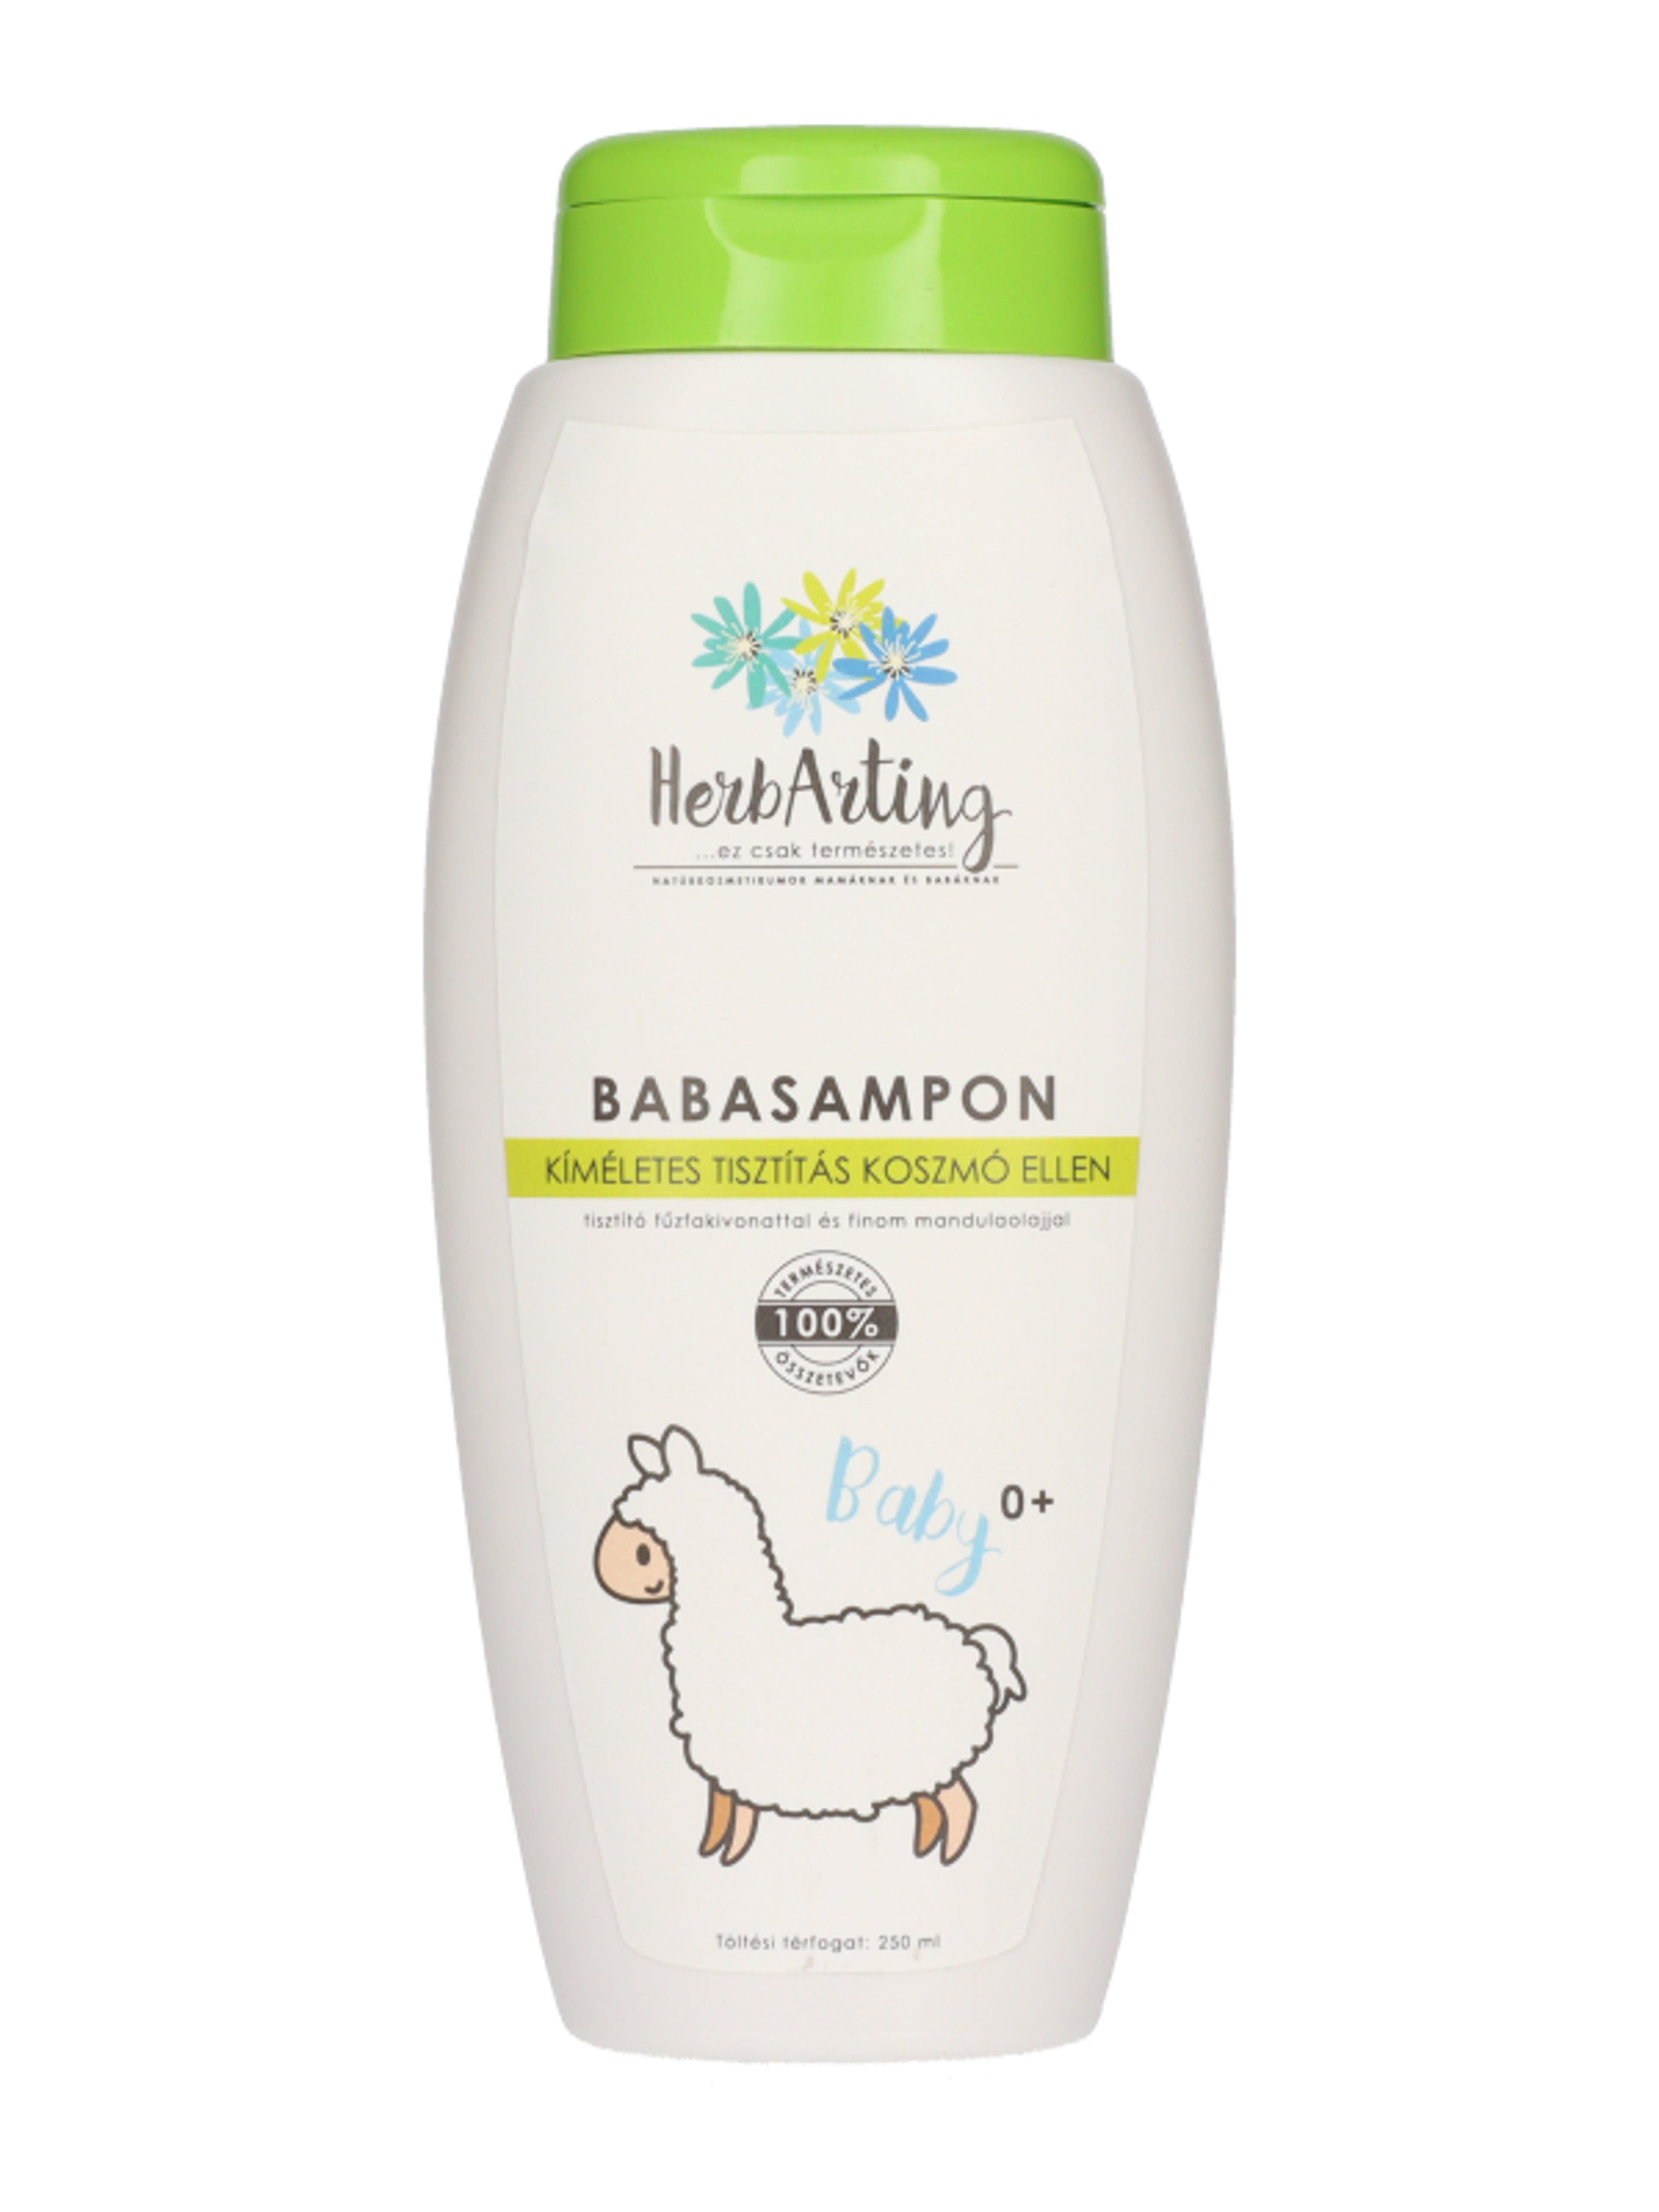 HerbArting Naturkozmetikum babasampon - 250 ml